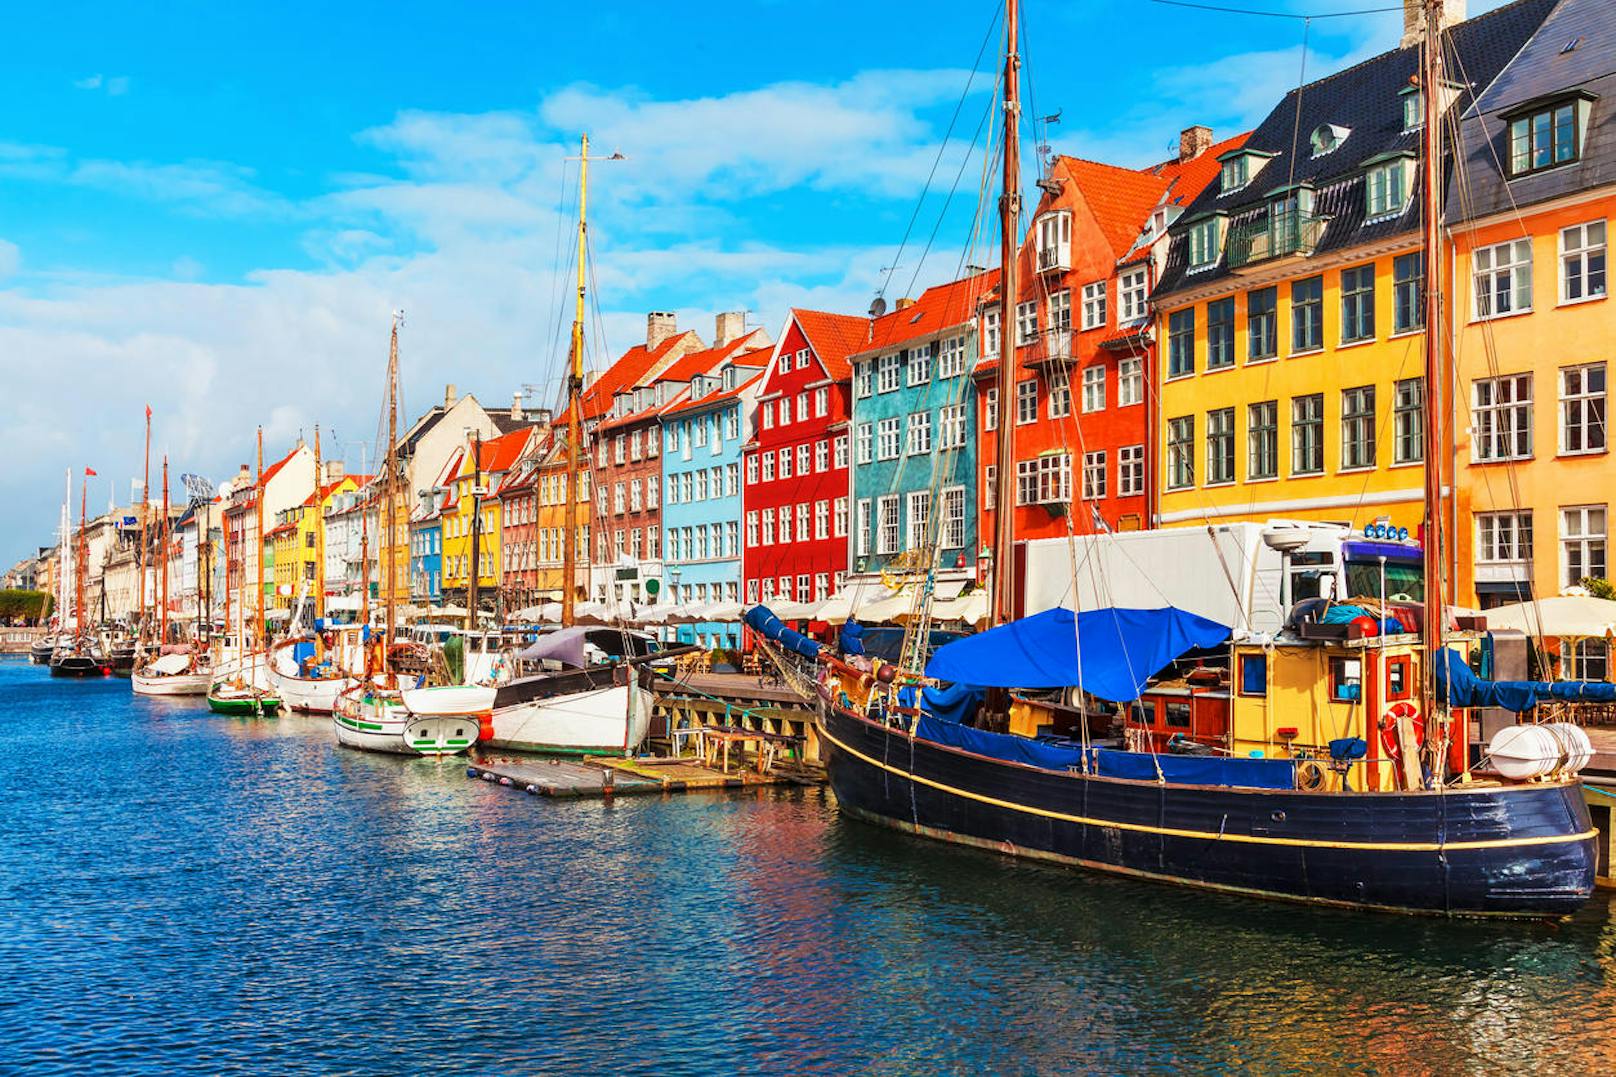 Kopenhagen (Dänemark): "Eine grüne Stadt wird noch nachhaltiger und zugänglicher"